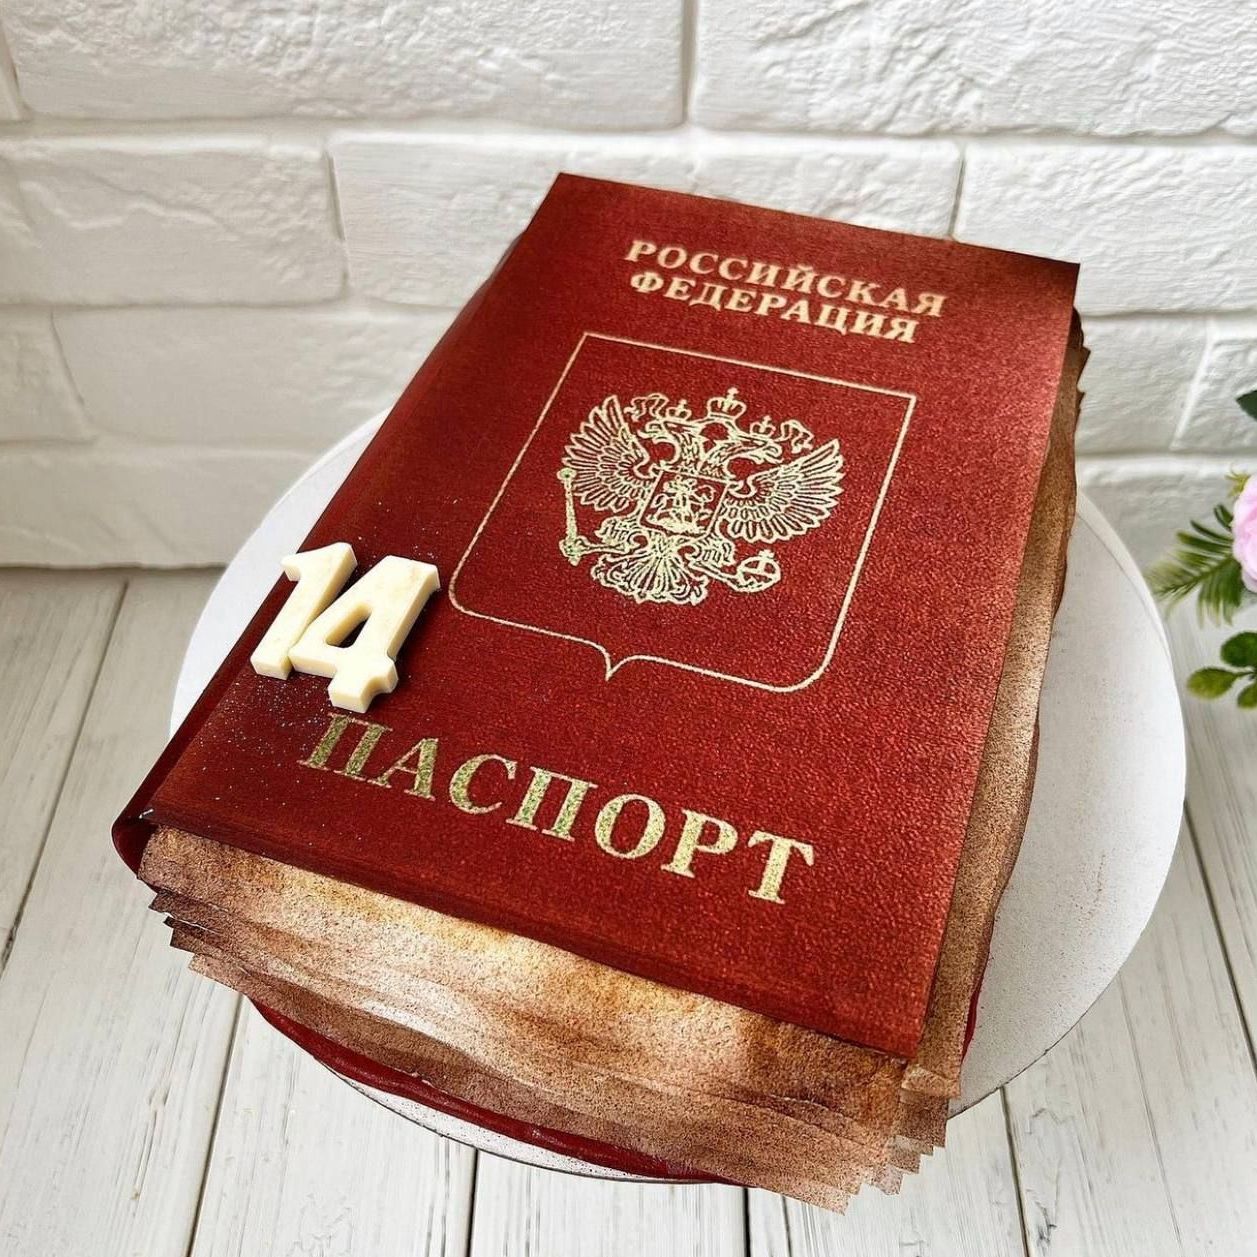 Фото торта с паспортом